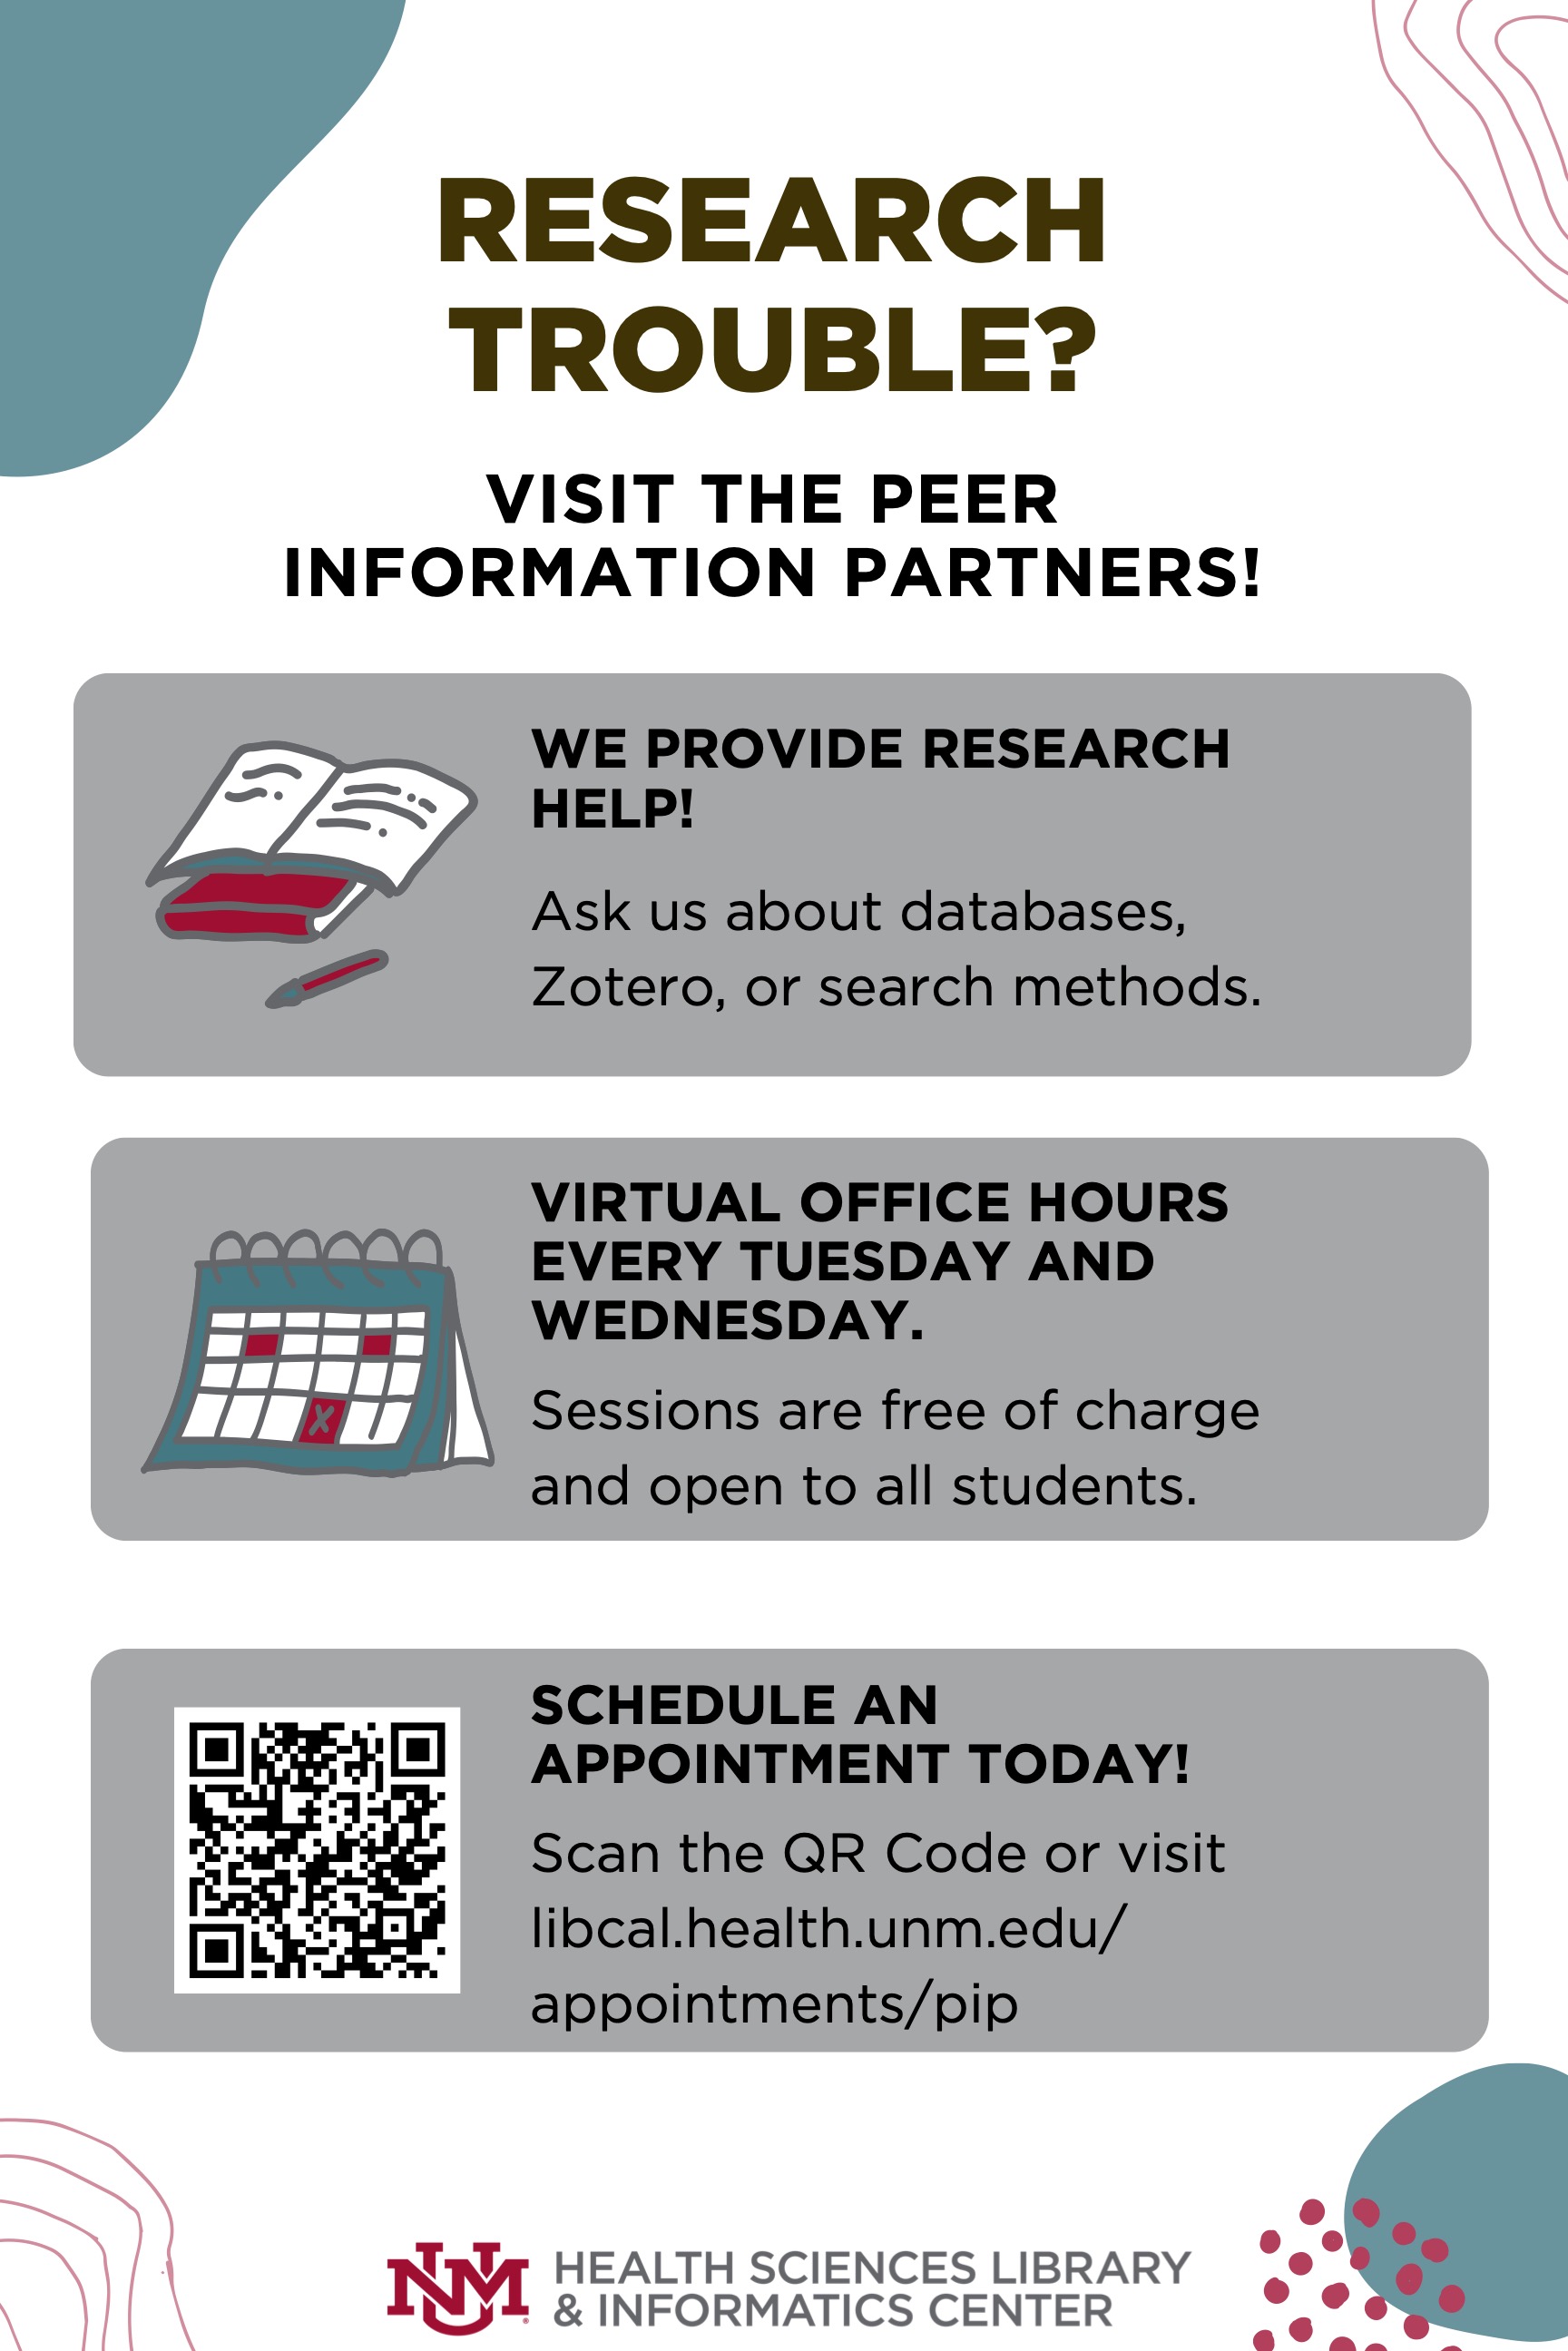 Folleto para asistencia de investigación en Peer Information Partners, las sesiones son gratuitas y el horario de oficina virtual todos los martes y miércoles. Visite libcal.health.unm.edu/appointments/pip para obtener más información